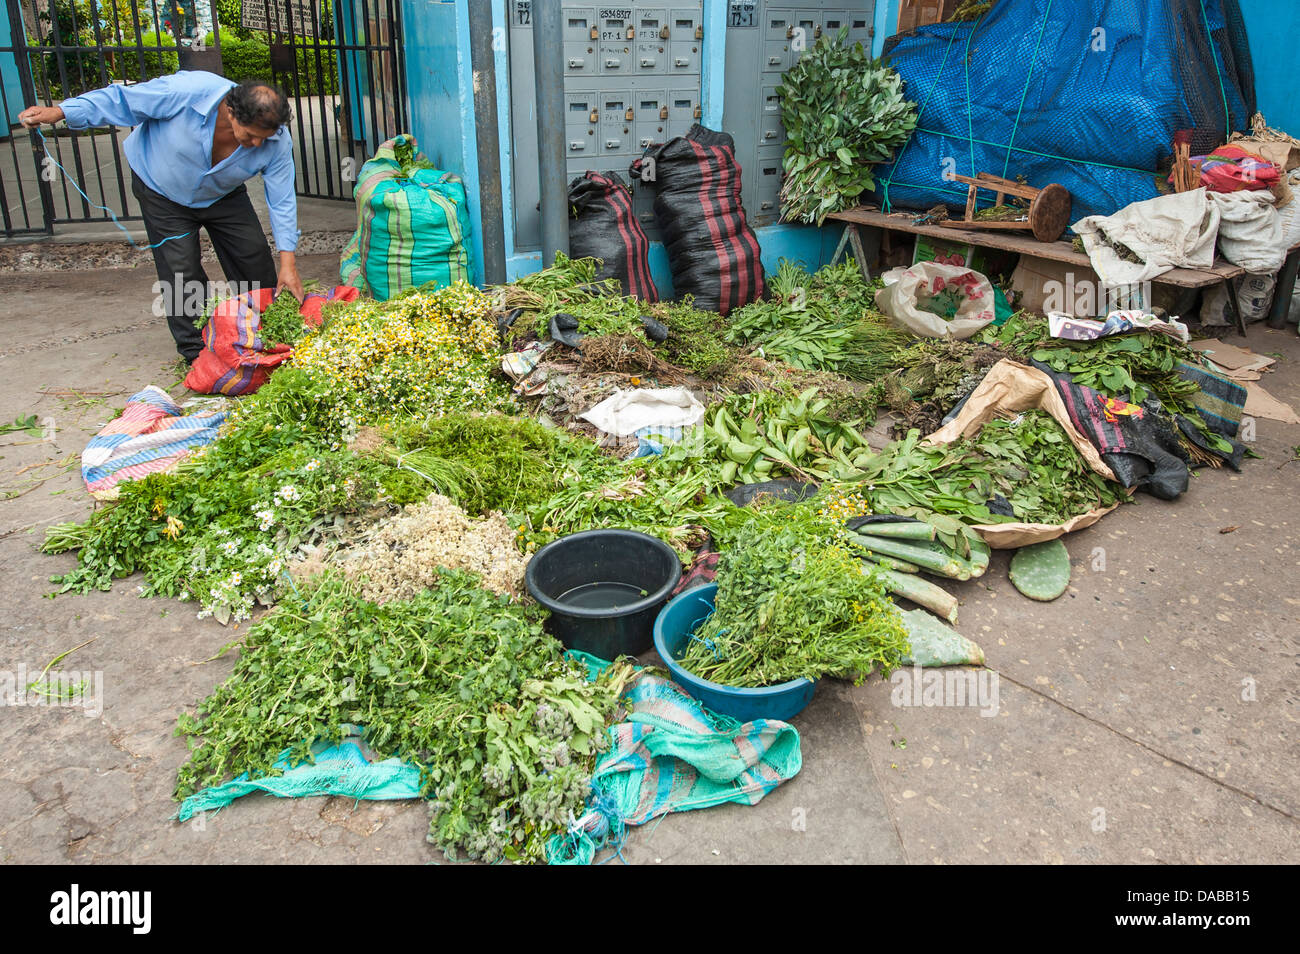 Frische Kräuter Gewürze Gemüse Gemüse Grüns stehen Stall Shop Einkaufen in lokalen Zentralmarkt Marktplatz in Chiclayo, Peru. Stockfoto